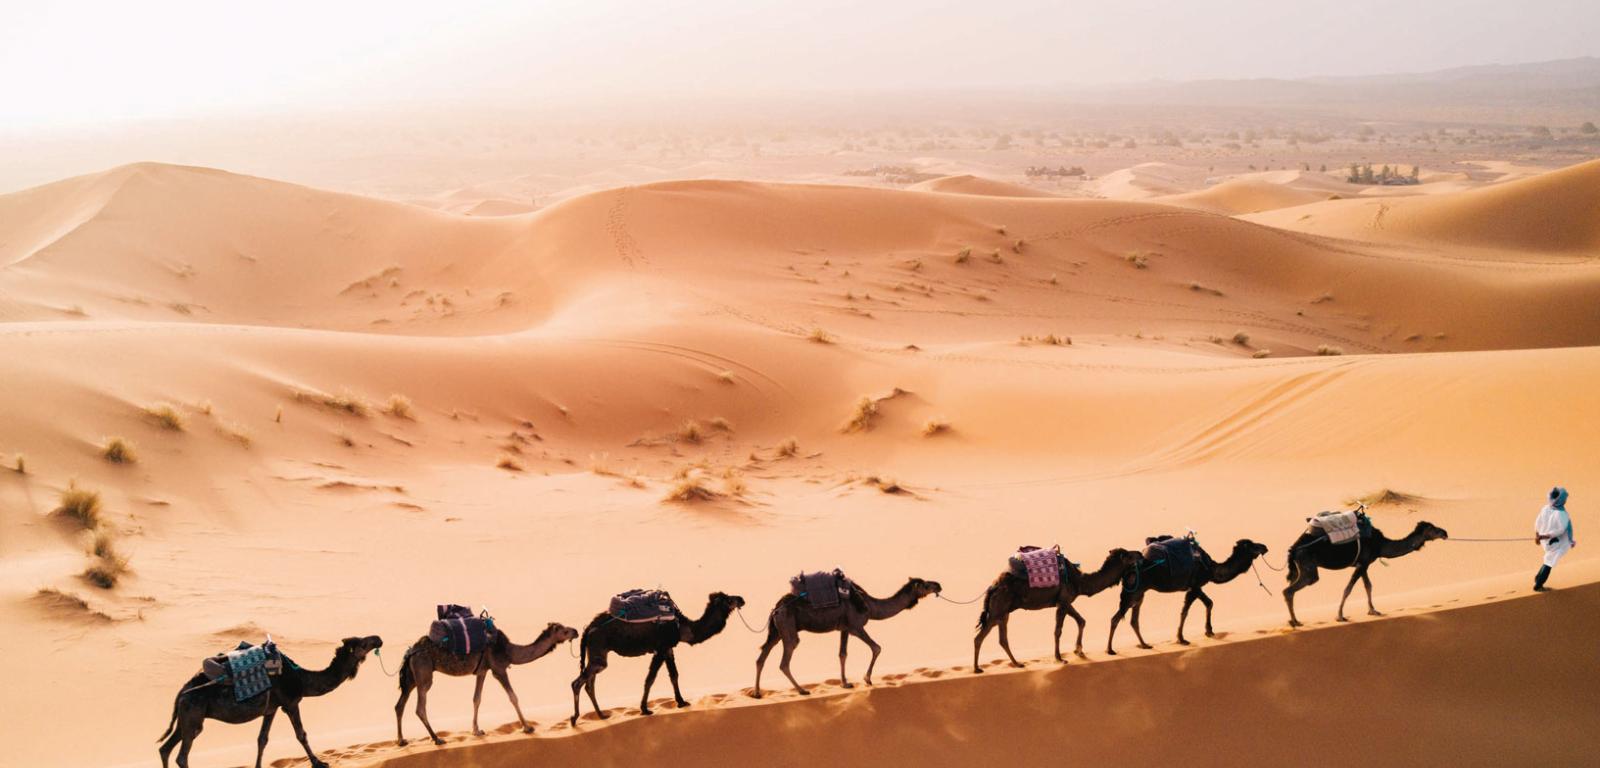 Trekking z wielbłądami na Saharze to duża atrakcja turystyczna w Maroku.